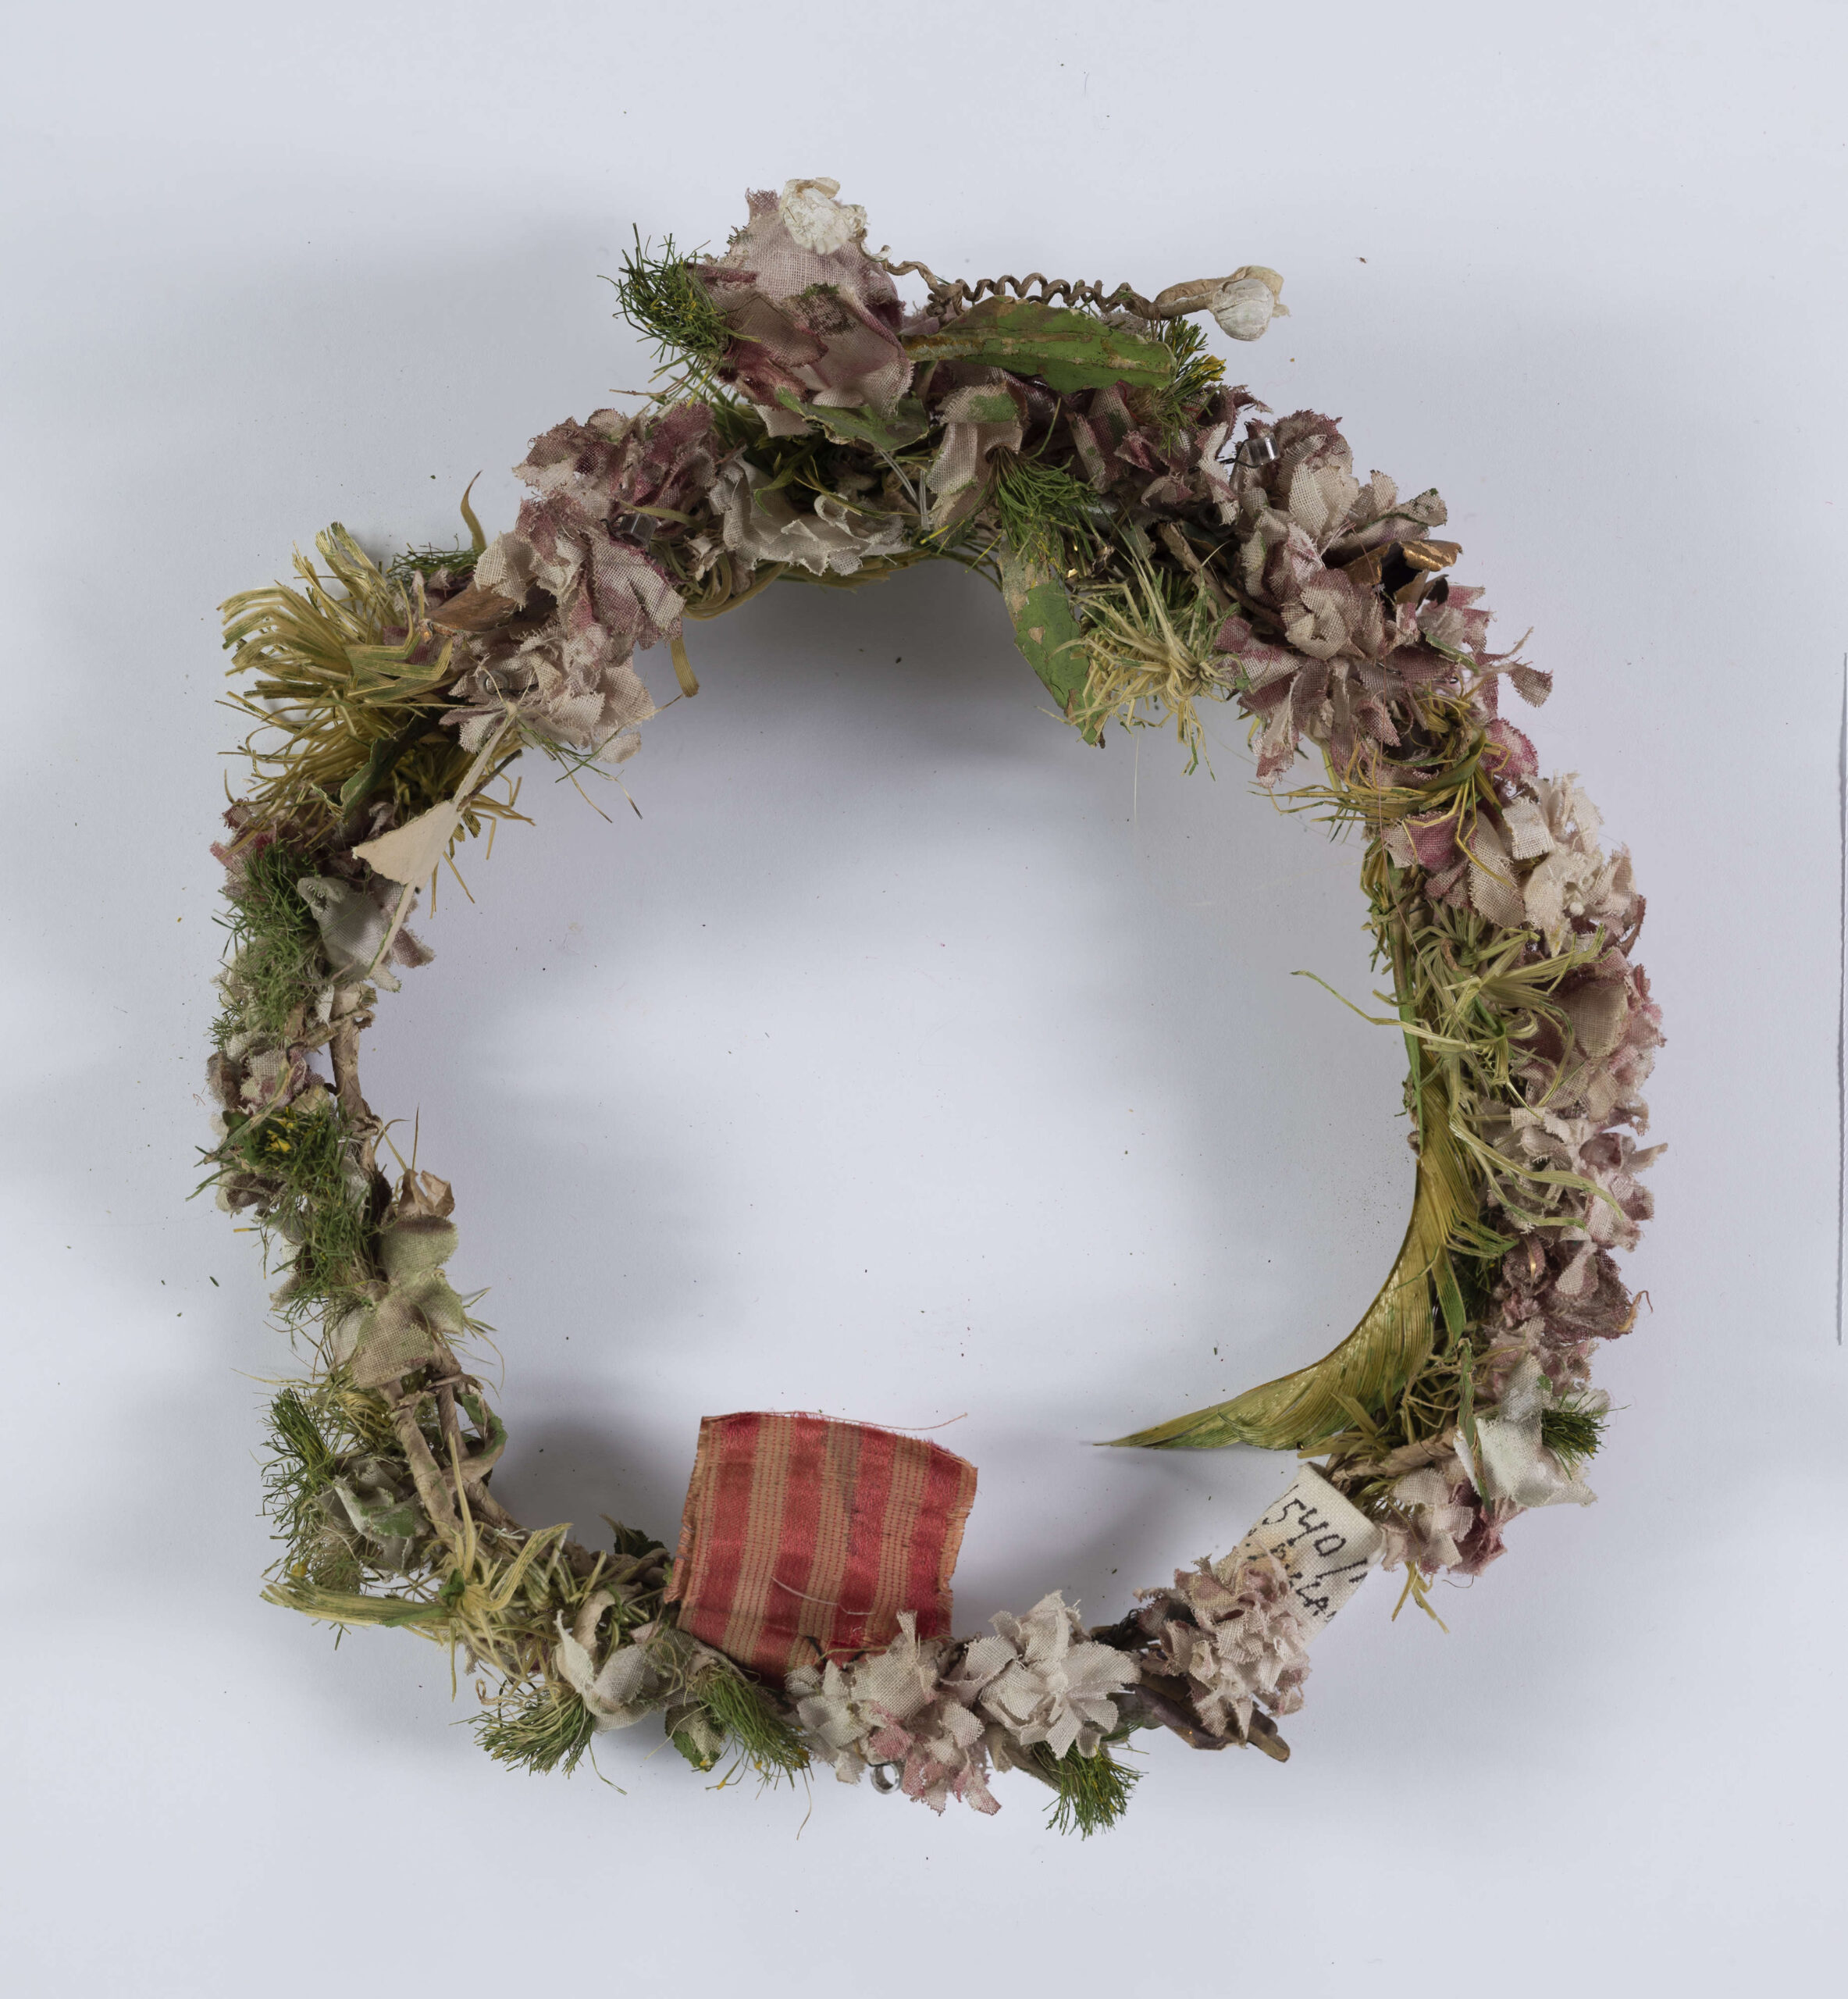 Ubiór głowy kobiecy w formie wianka wykonany z różnokolorowych kwiatów z płótna oraz zielonych listków. Całość umocowana na drucie.